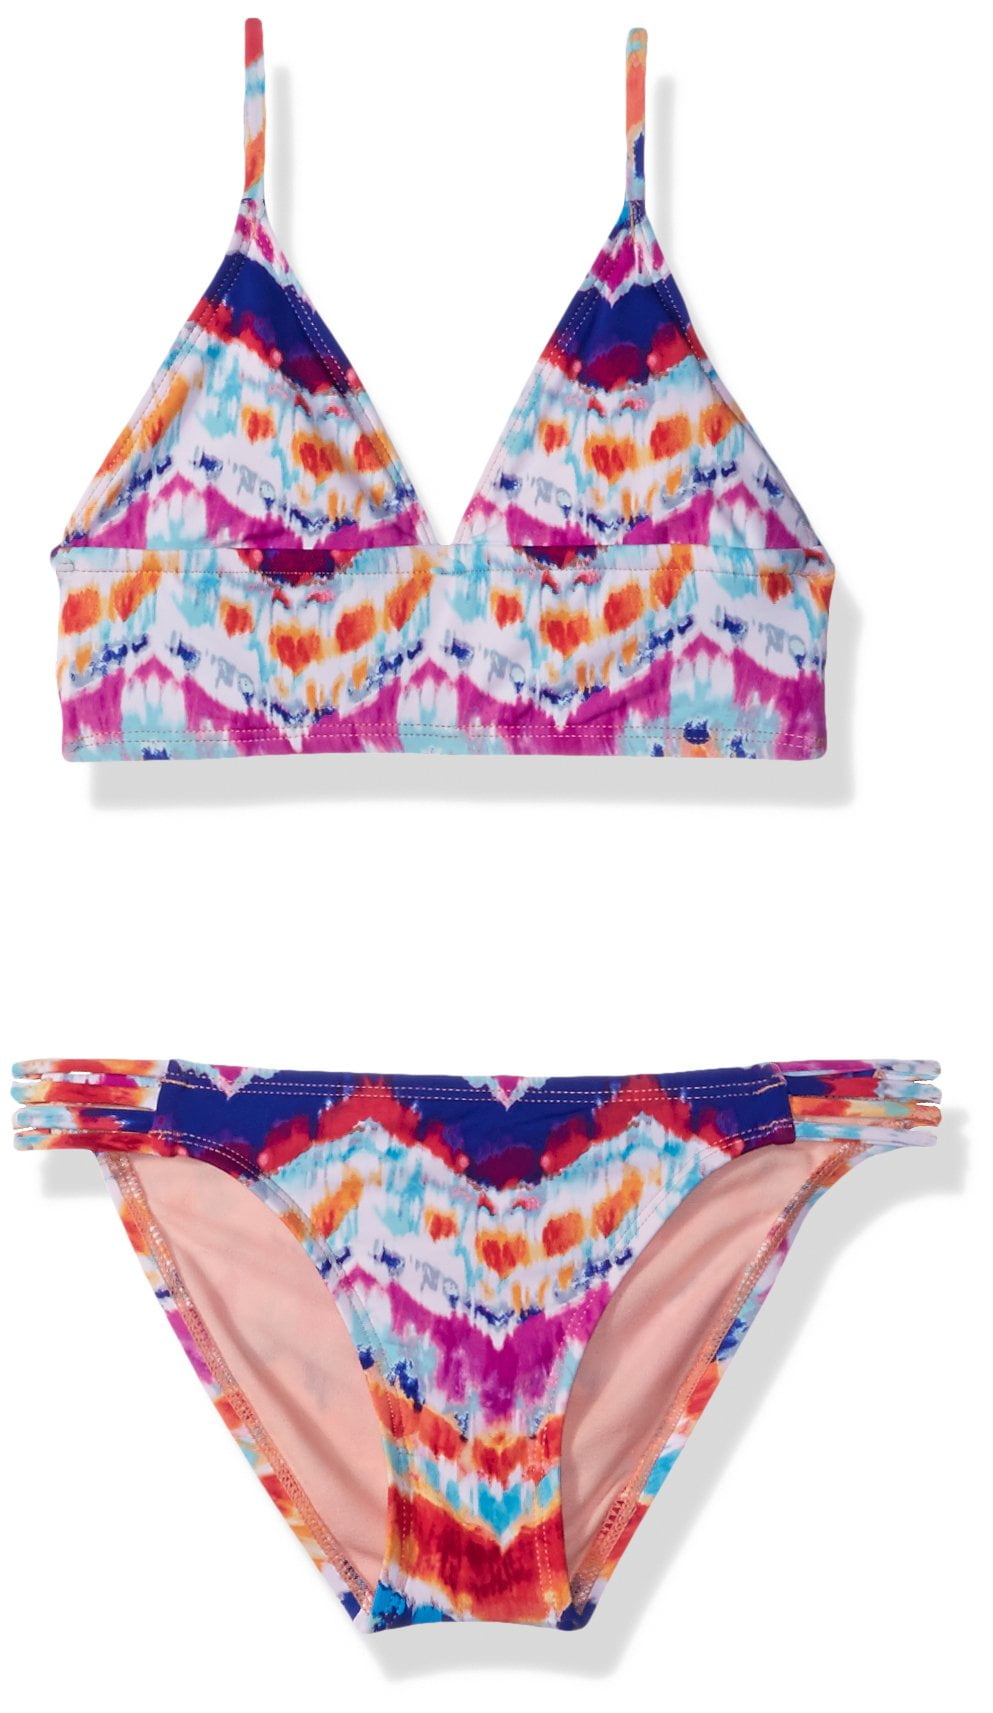 Girls Tie-Dye Swimwear Two-Piece Tankini Set 14 - Walmart.com - Walmart.com